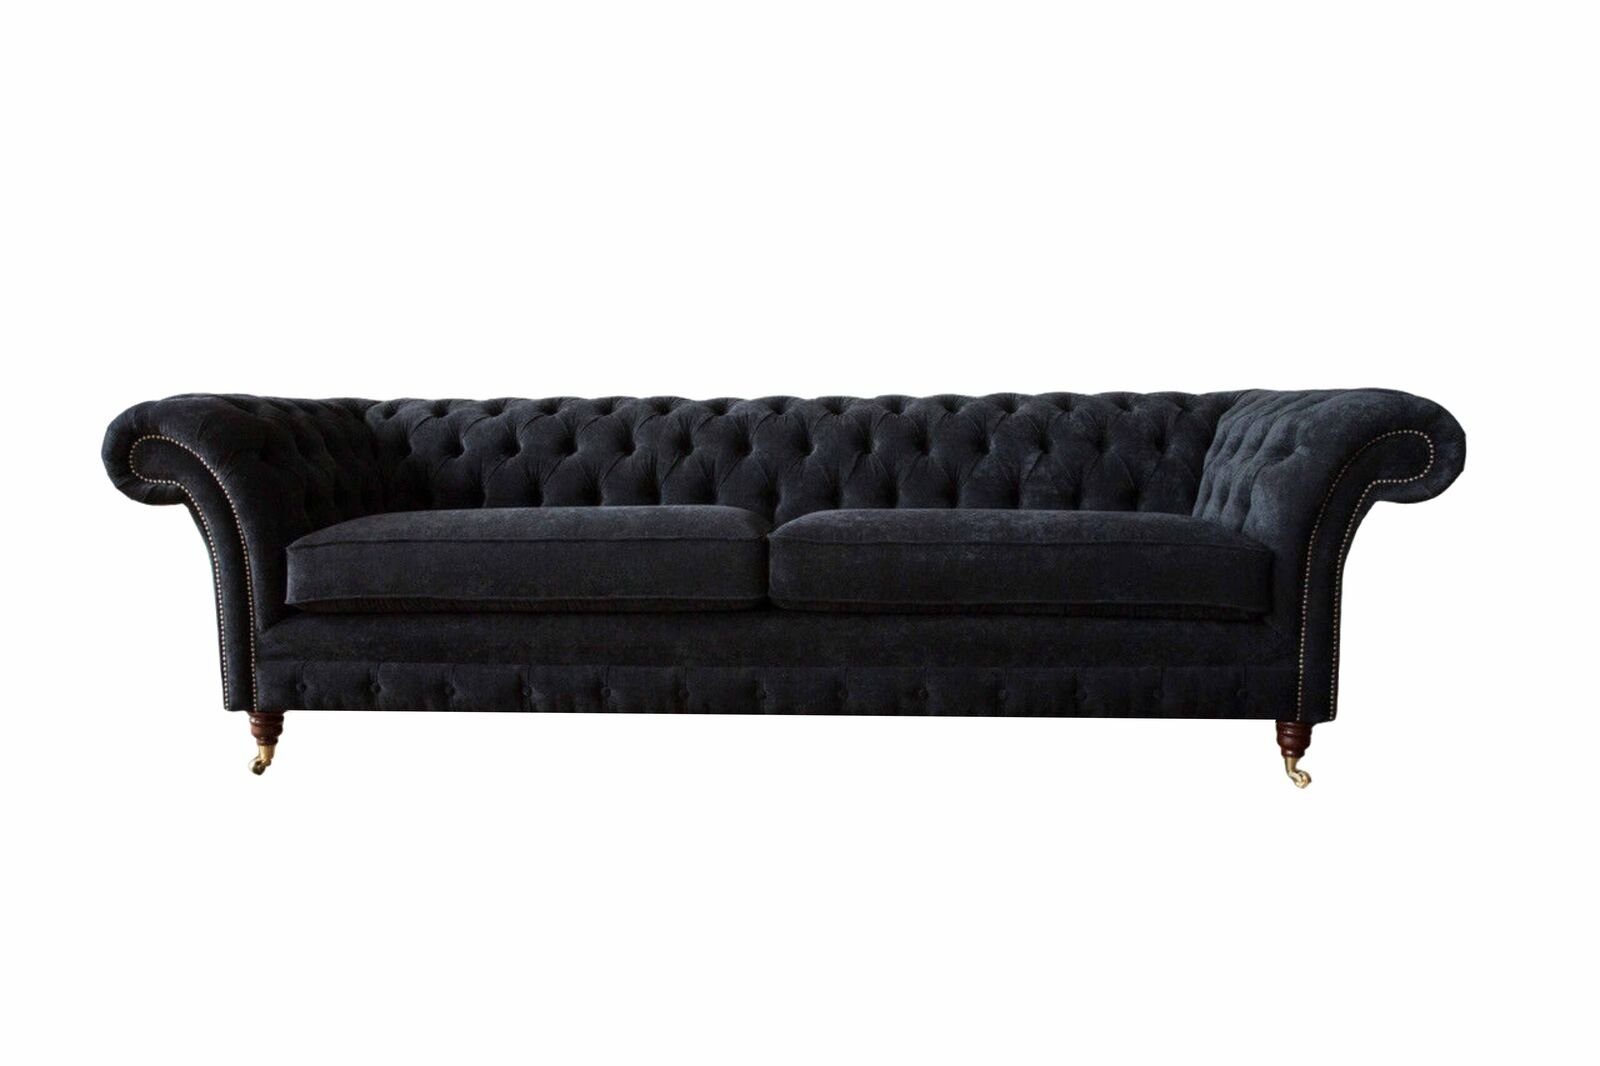 JVmoebel Sofa Design Sofa 4 Sitzer Polster Luxus Klassische Textil Chesterfield, Made In Europe